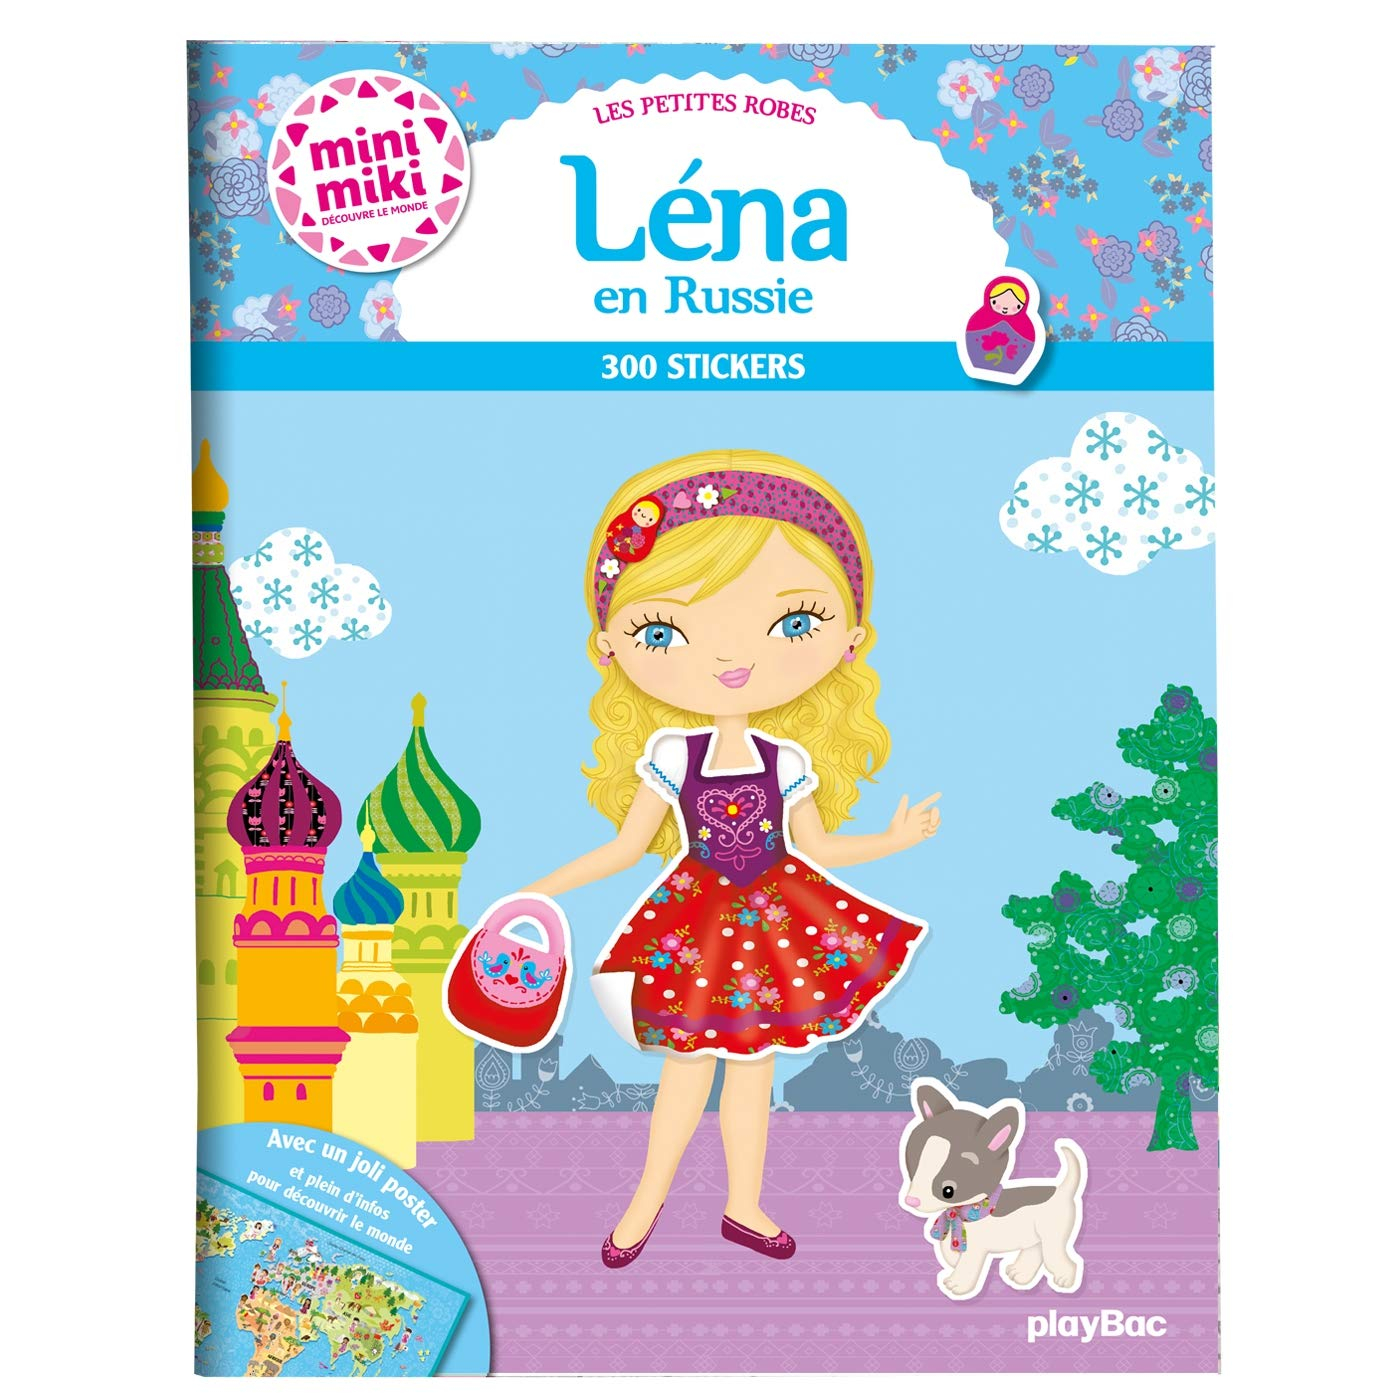 Les petites robes de Lena en Russie